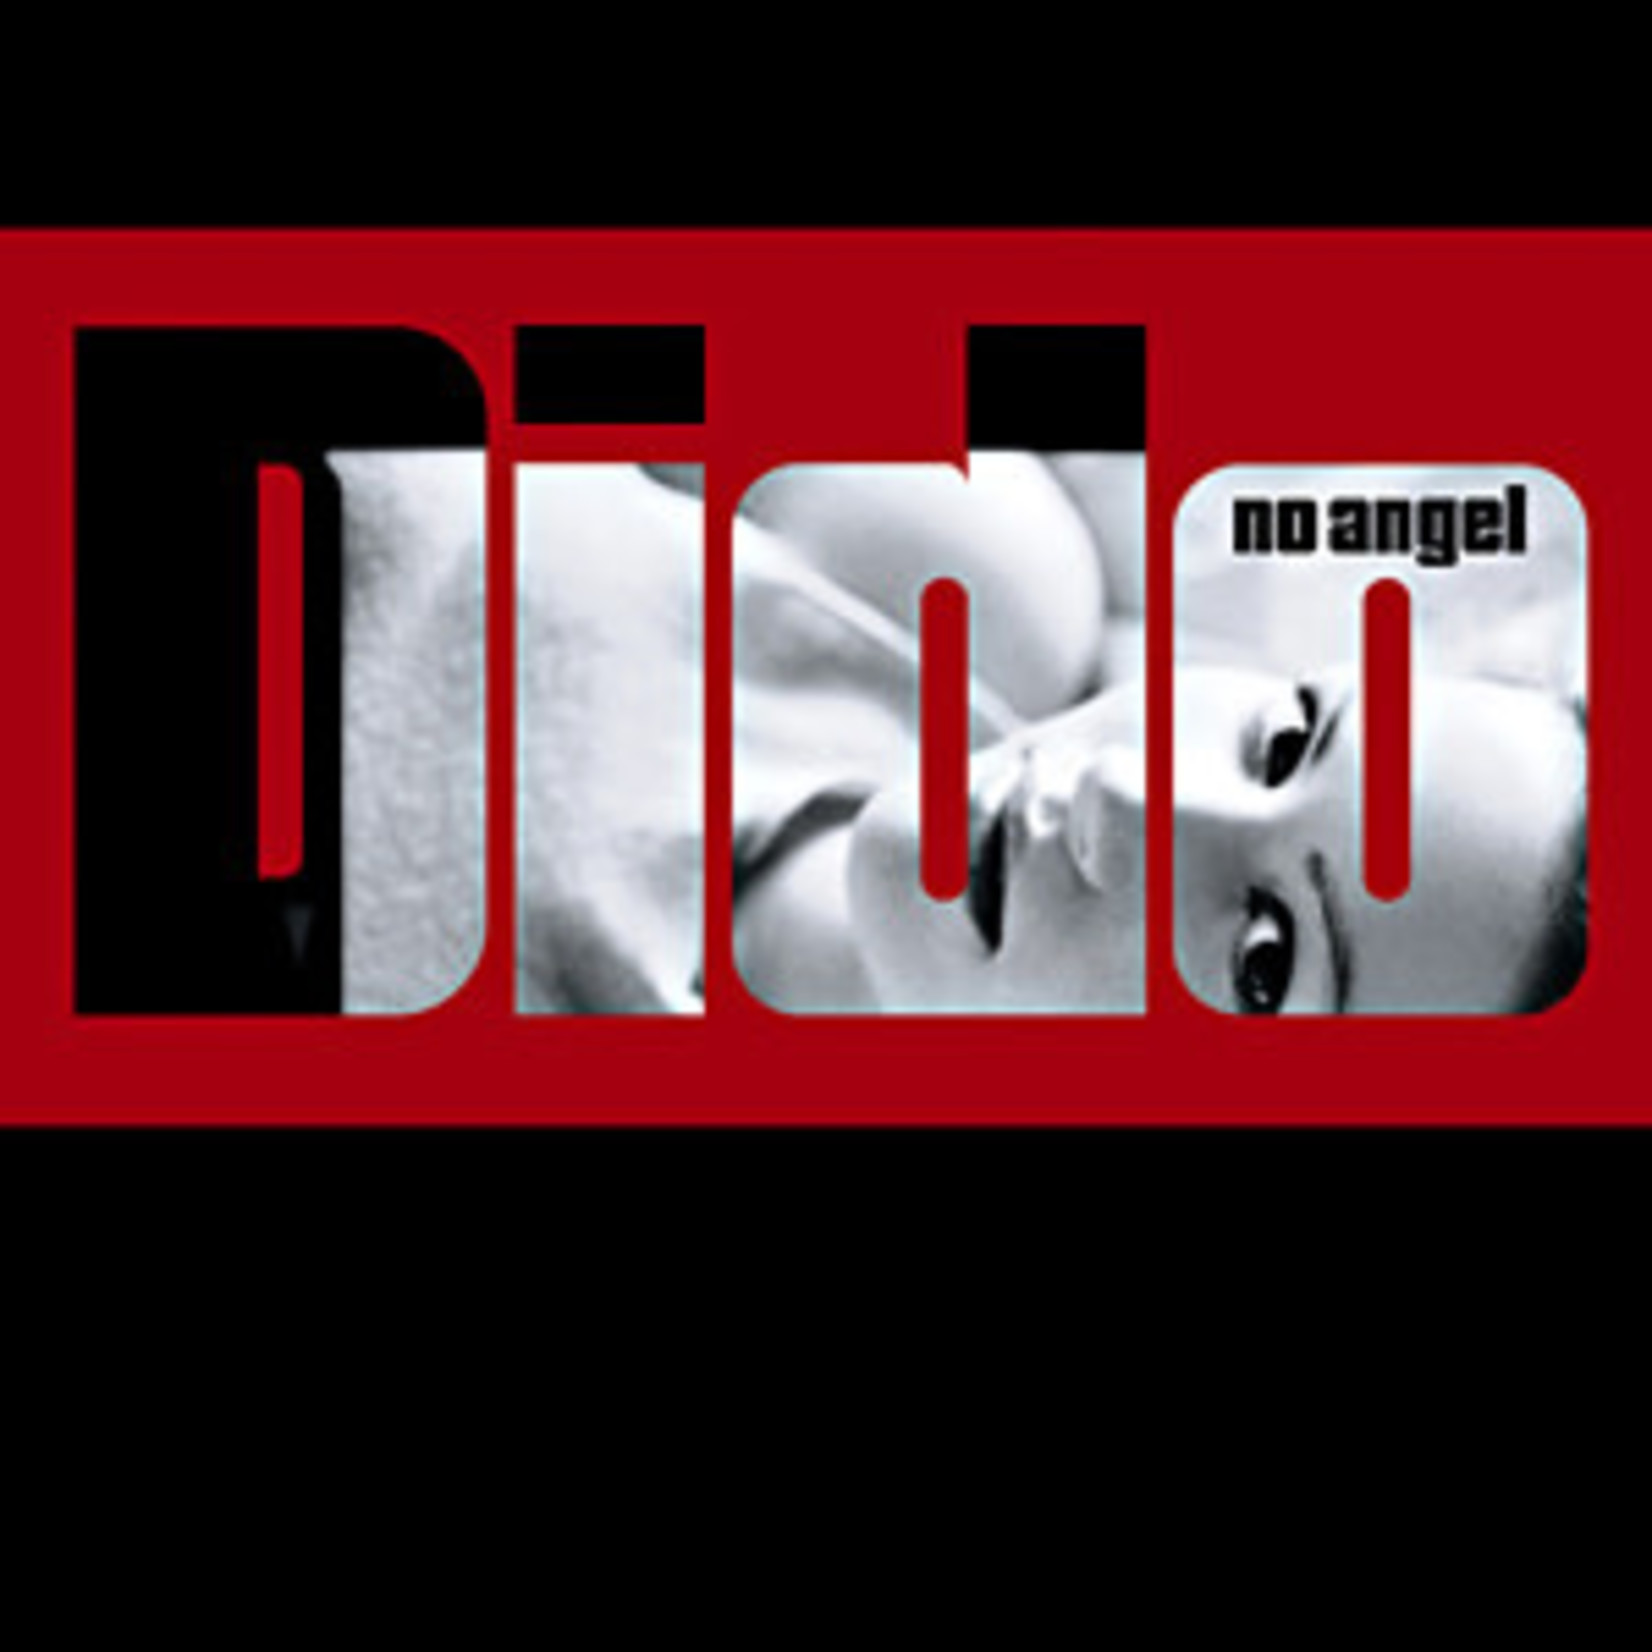 Dido - No Angel [USED CD]